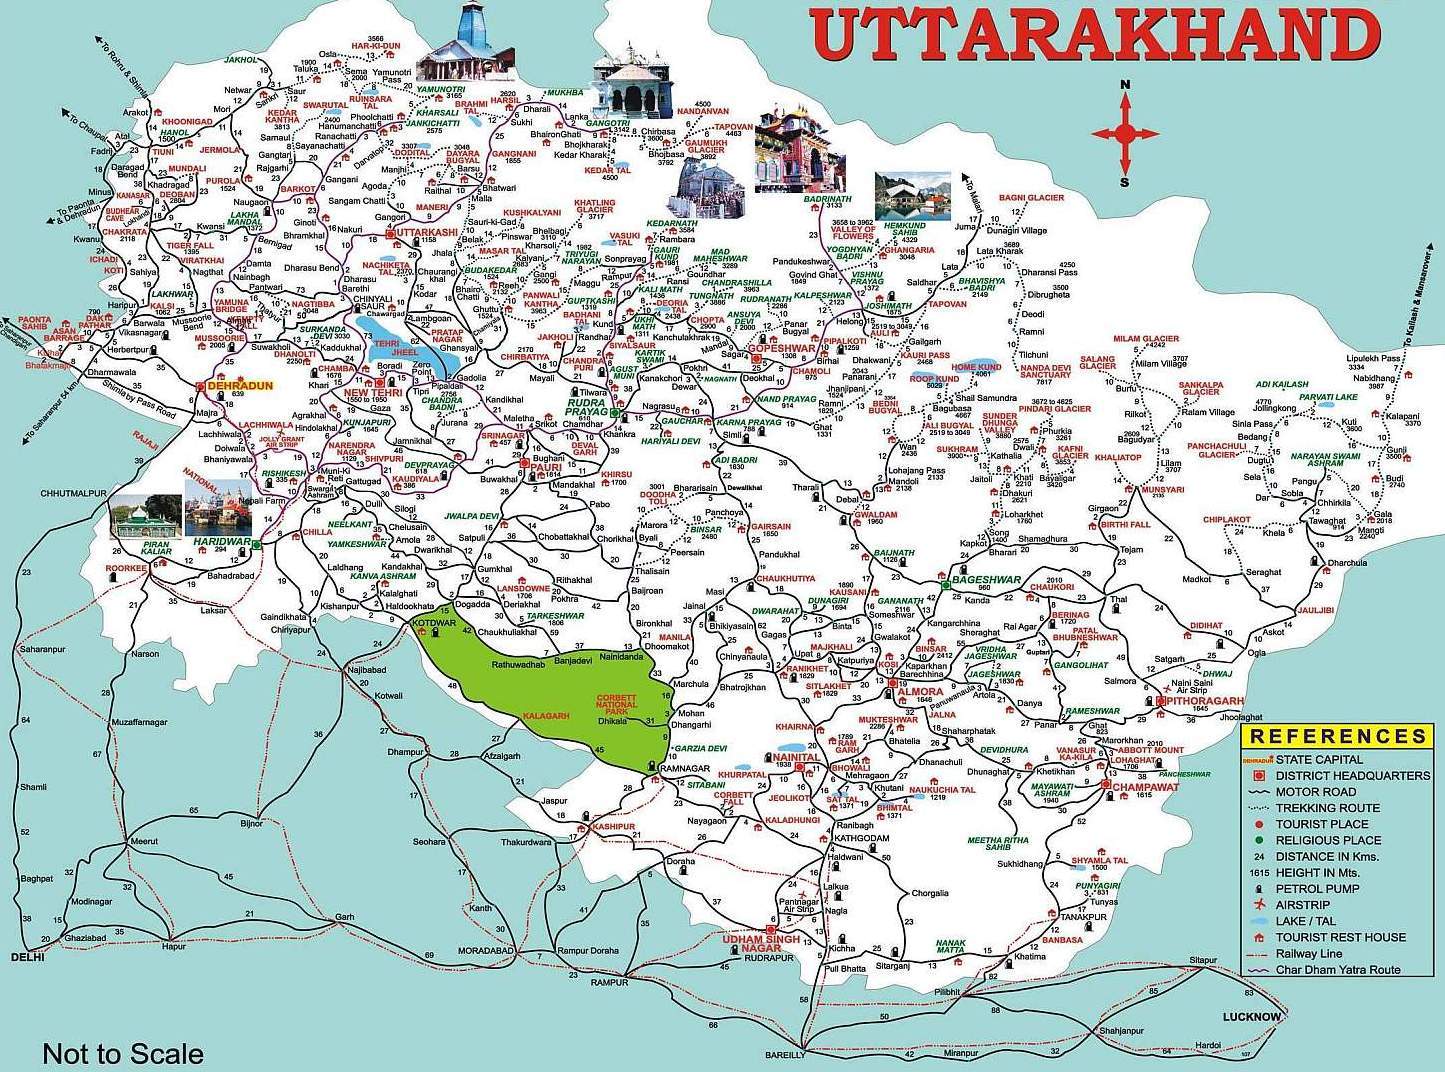 Uttarakhand Tourism Map